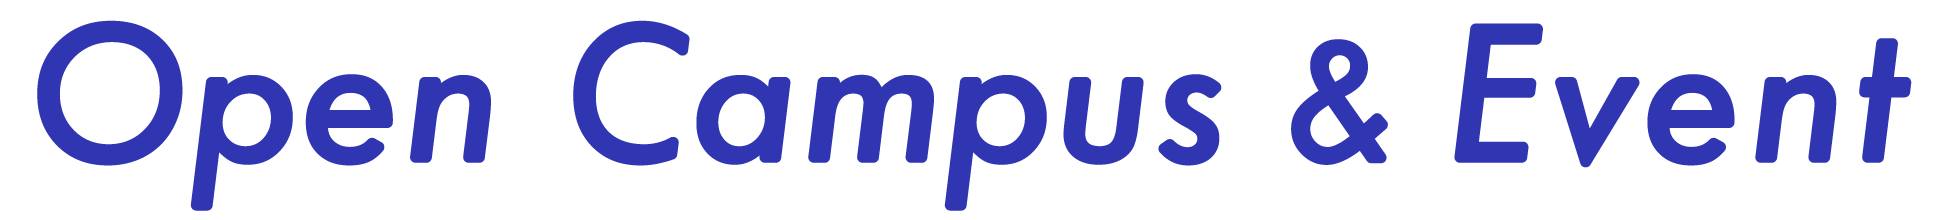 opencampus